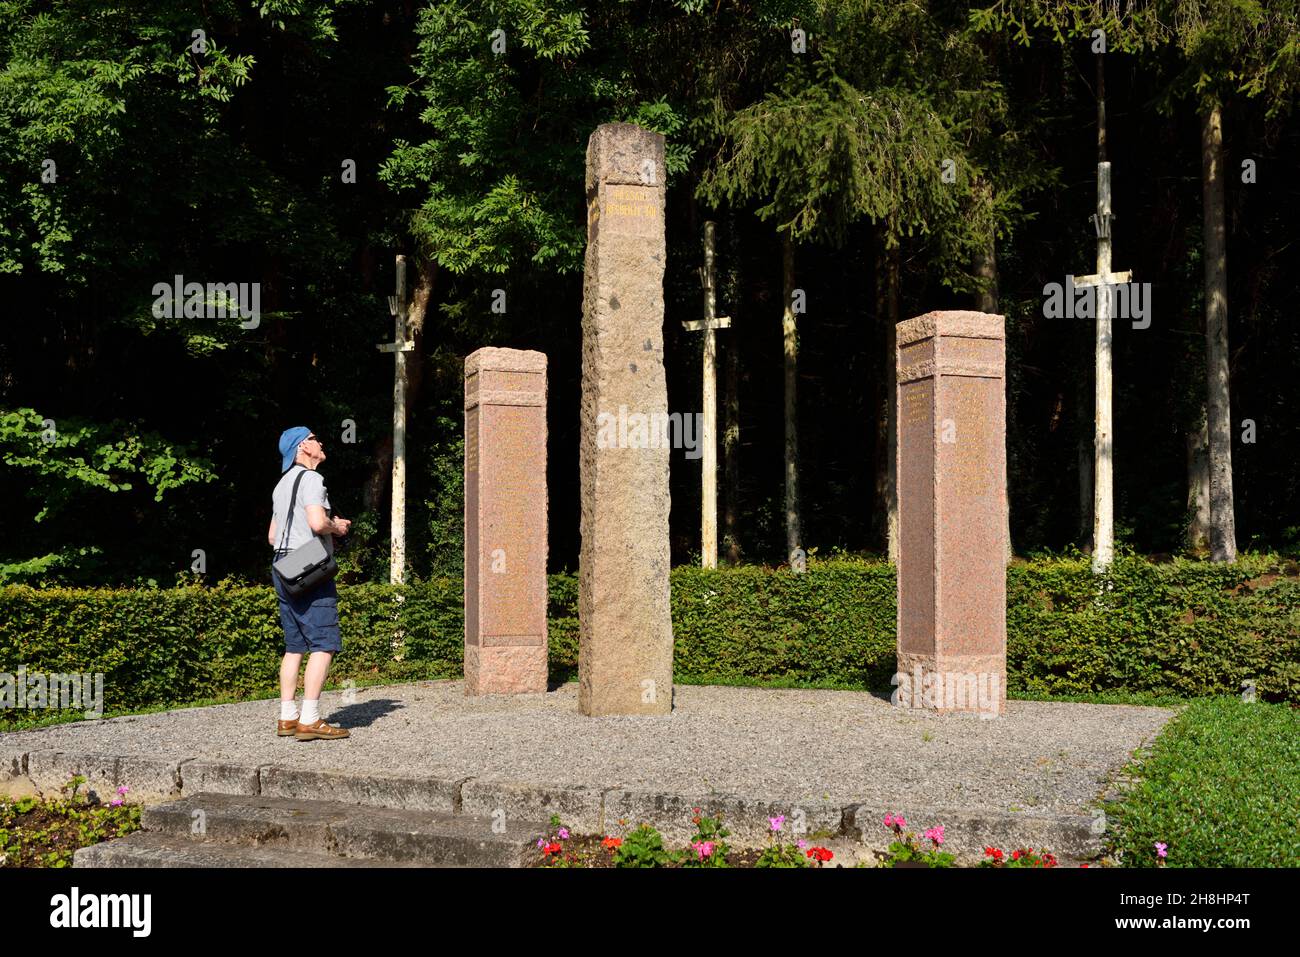 Francia, Meurthe-et-Moselle (54), Champigneulles, lugar llamado La Malpierre, monumento en memoria de los 63 combatientes de la resistencia fusilados entre 1941 y 1944 por los ocupantes alemanes en el claro de La Malpierre Foto de stock